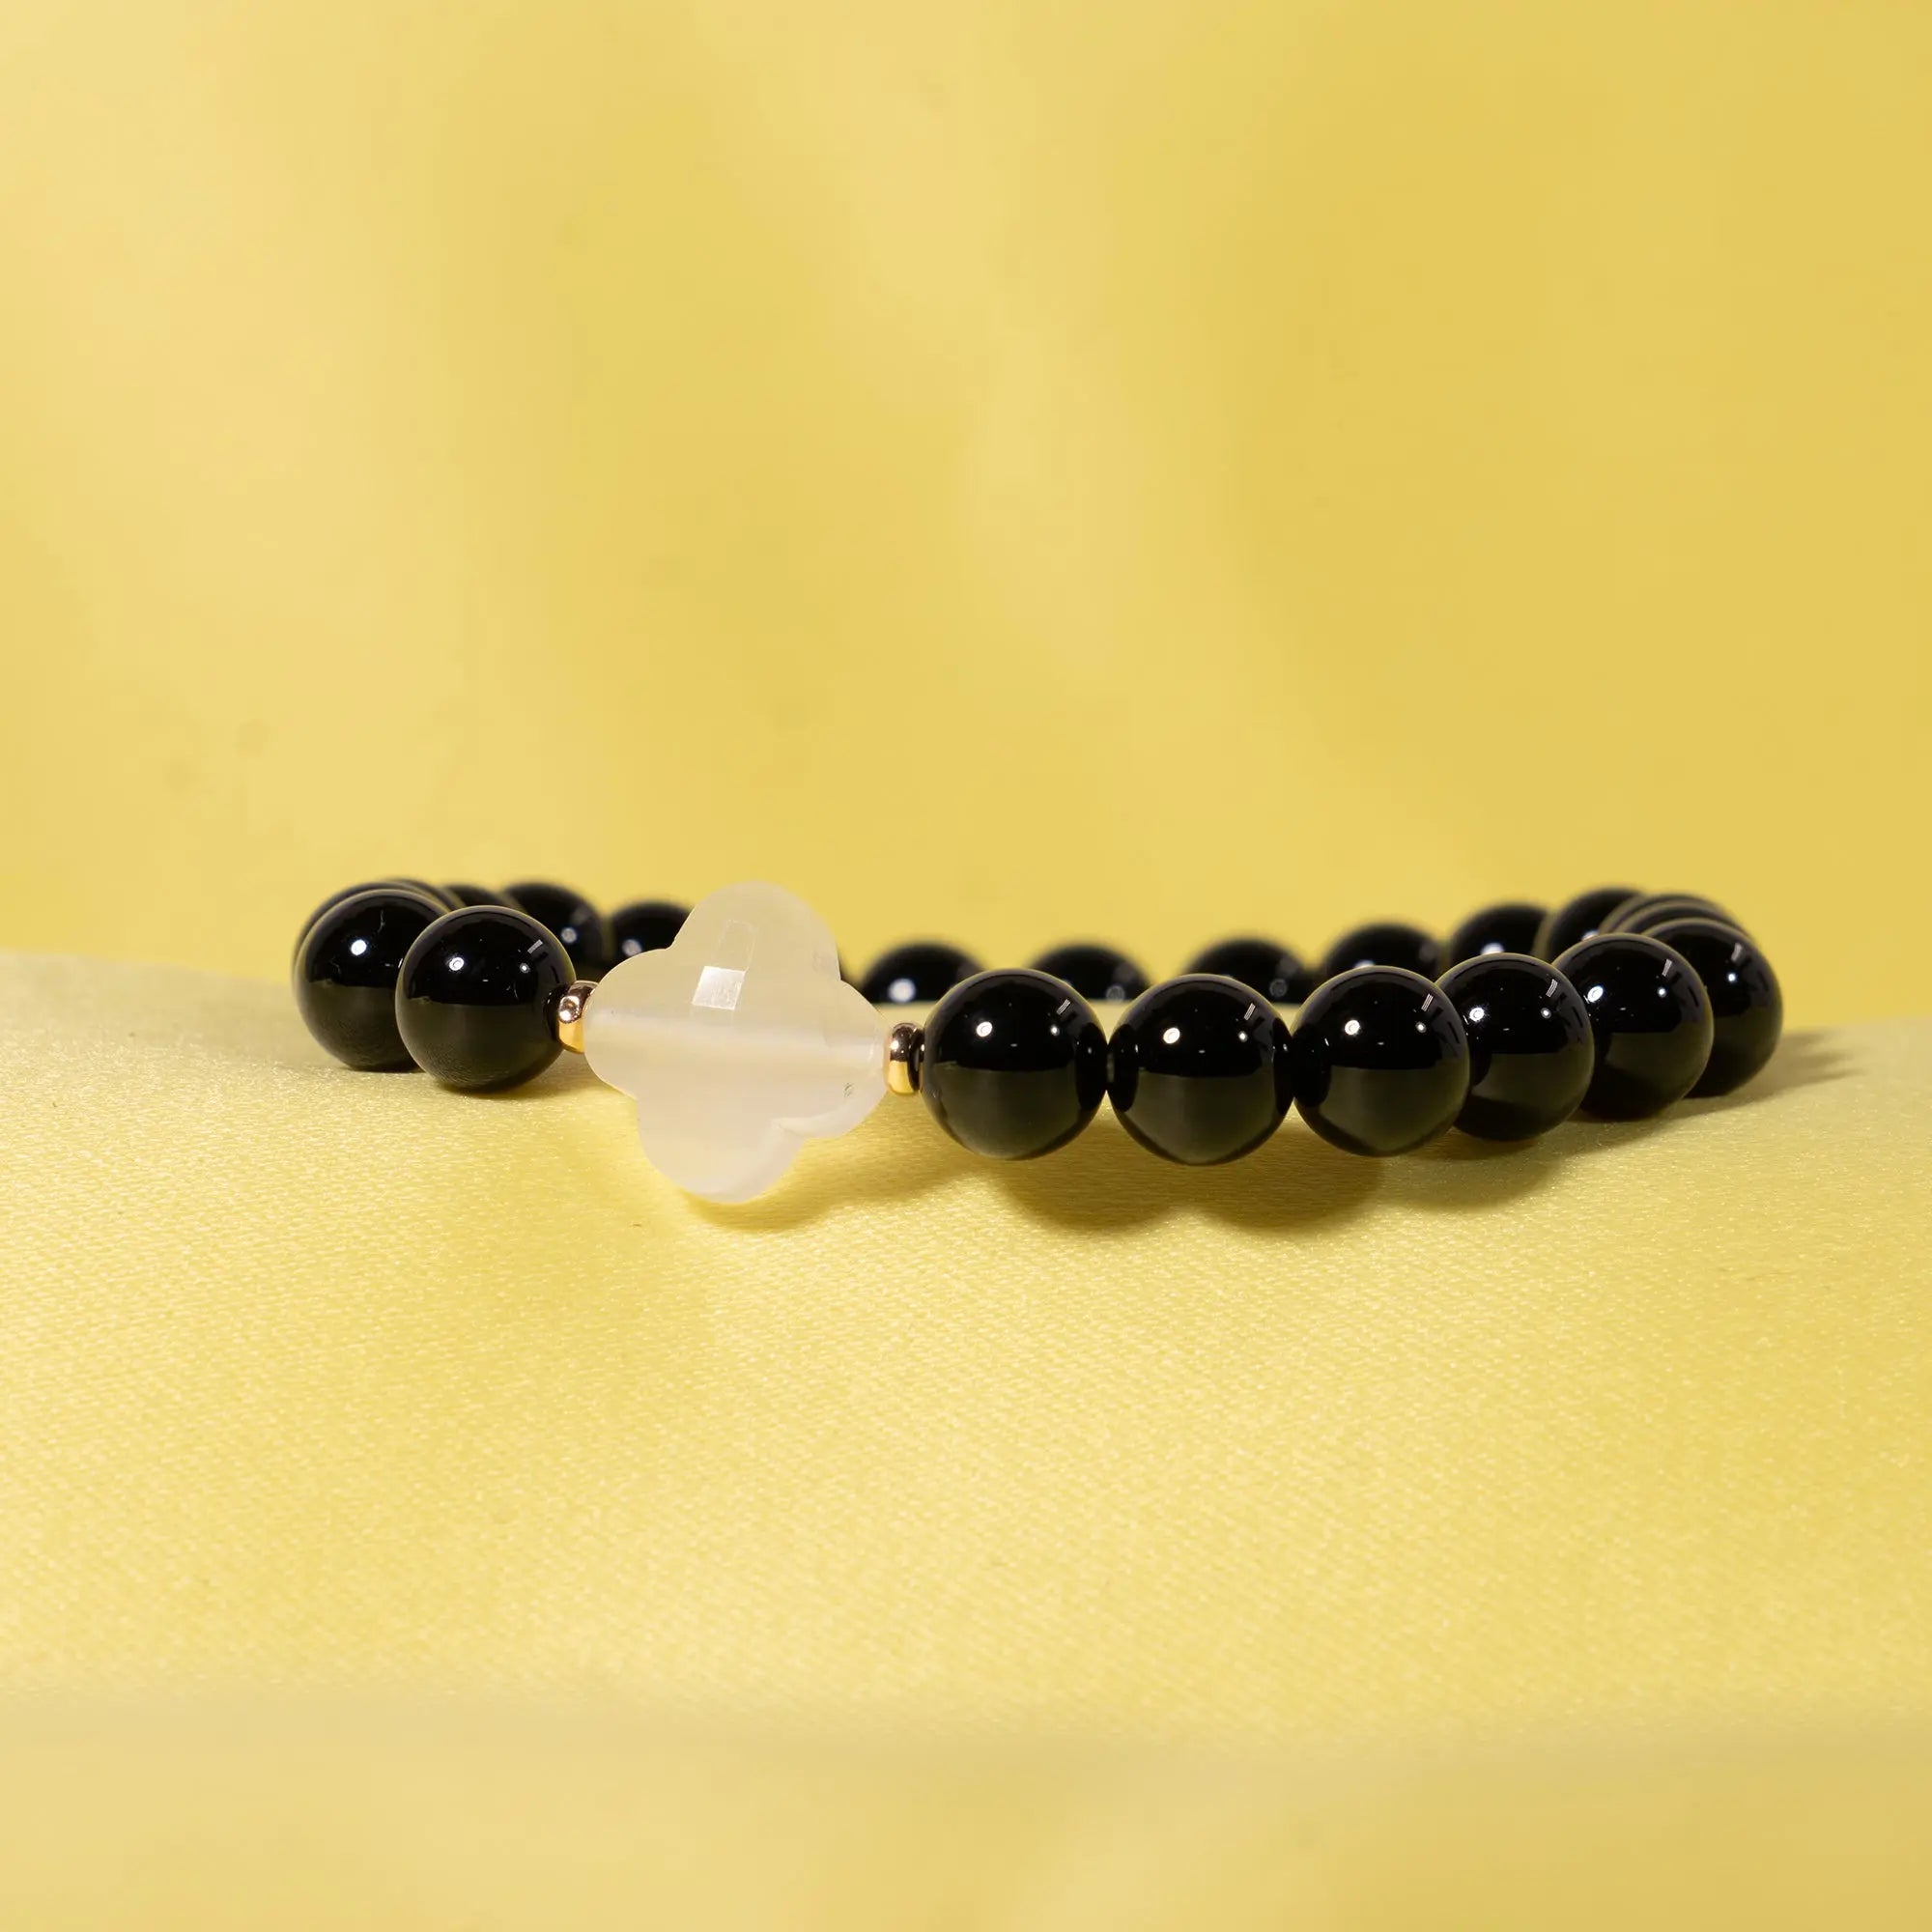 Buy 8mm Black Moonstone Bracelet, Moonstone Jewelry, Mens Bracelet,  Meditation Bracelet for Women, Yoga Bracelet, Healing Bracelet Online in  India - Etsy